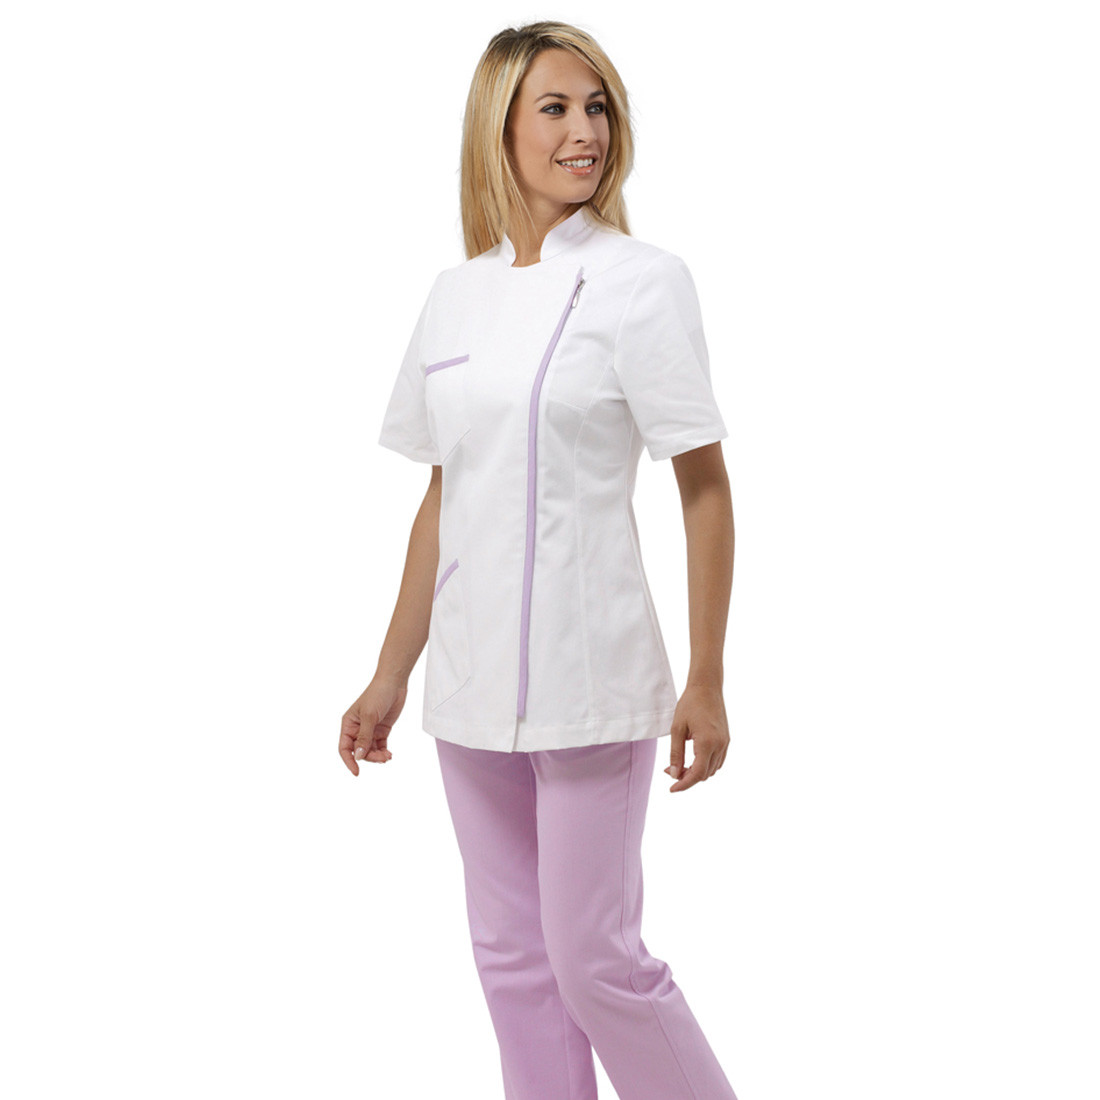 LOYS medical tunic - Safetywear